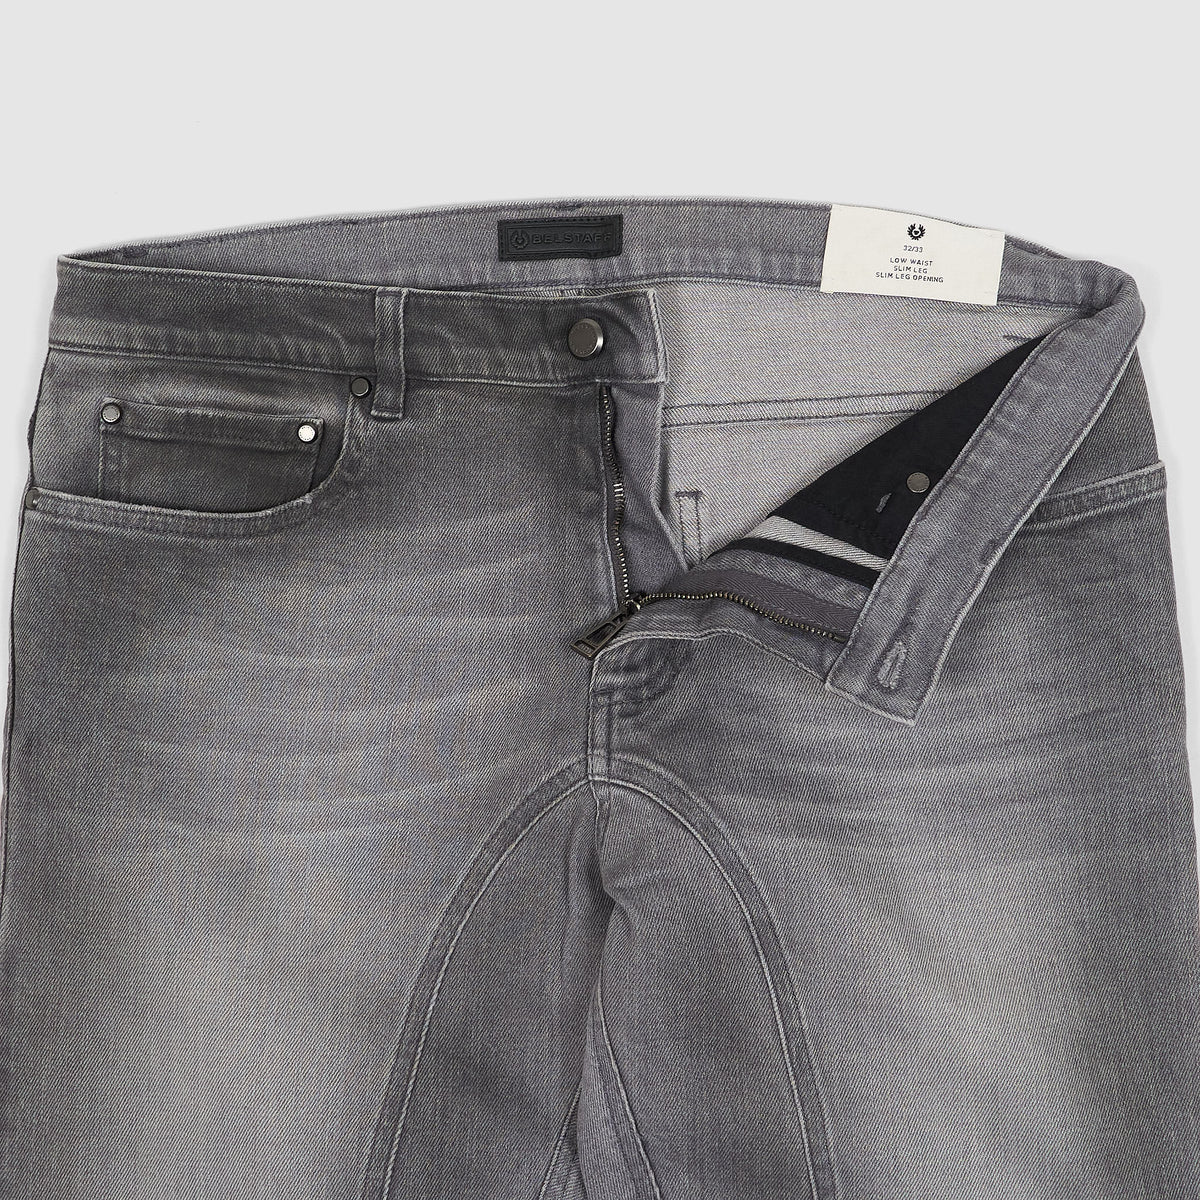 Belstaff 5-Pocket Heavy Washed Black Denim Jeans